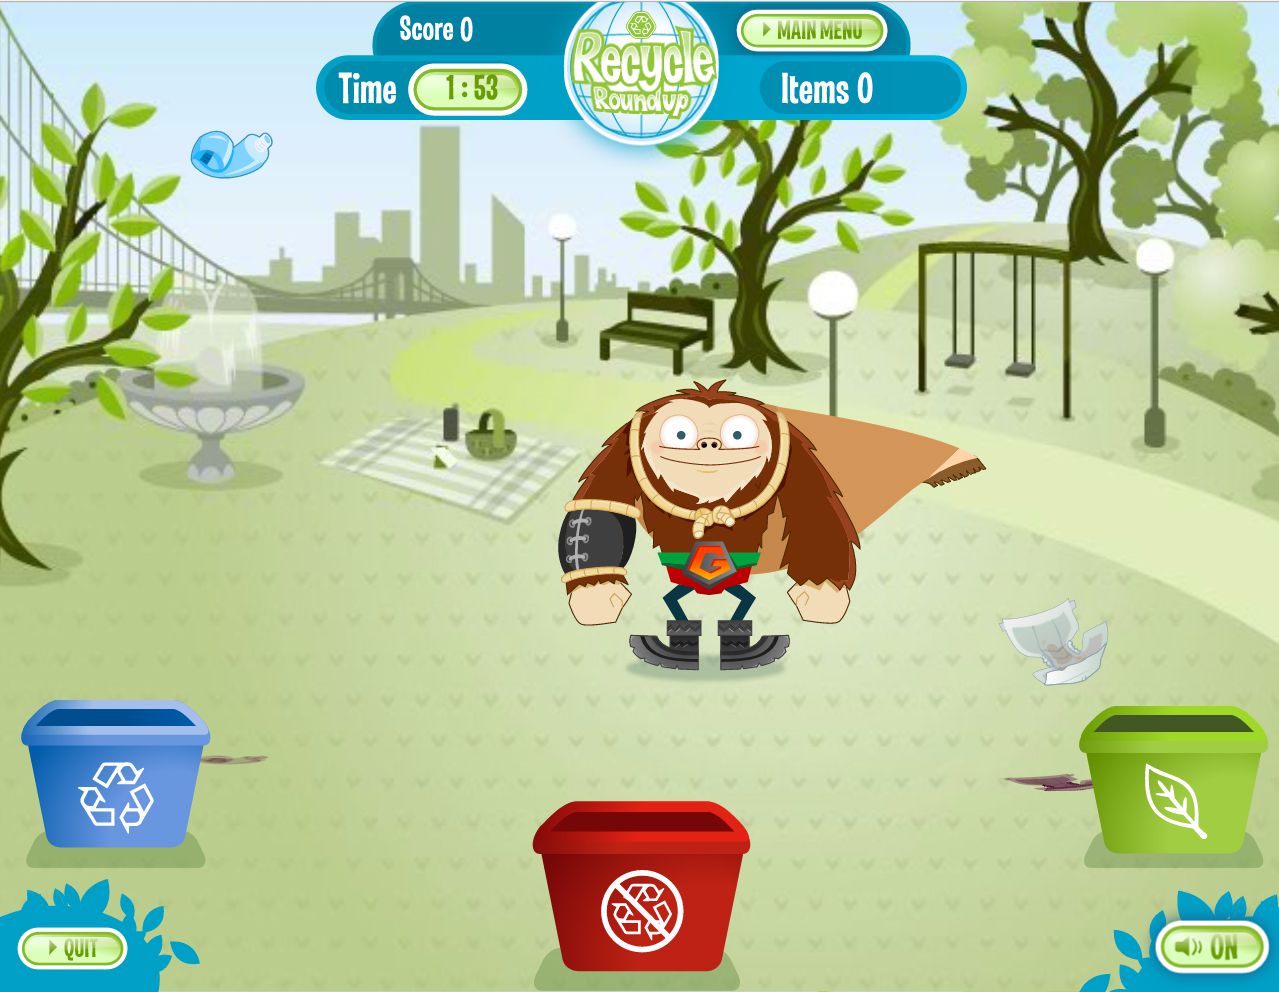 Återanvänd Roundup Earth Day -spel